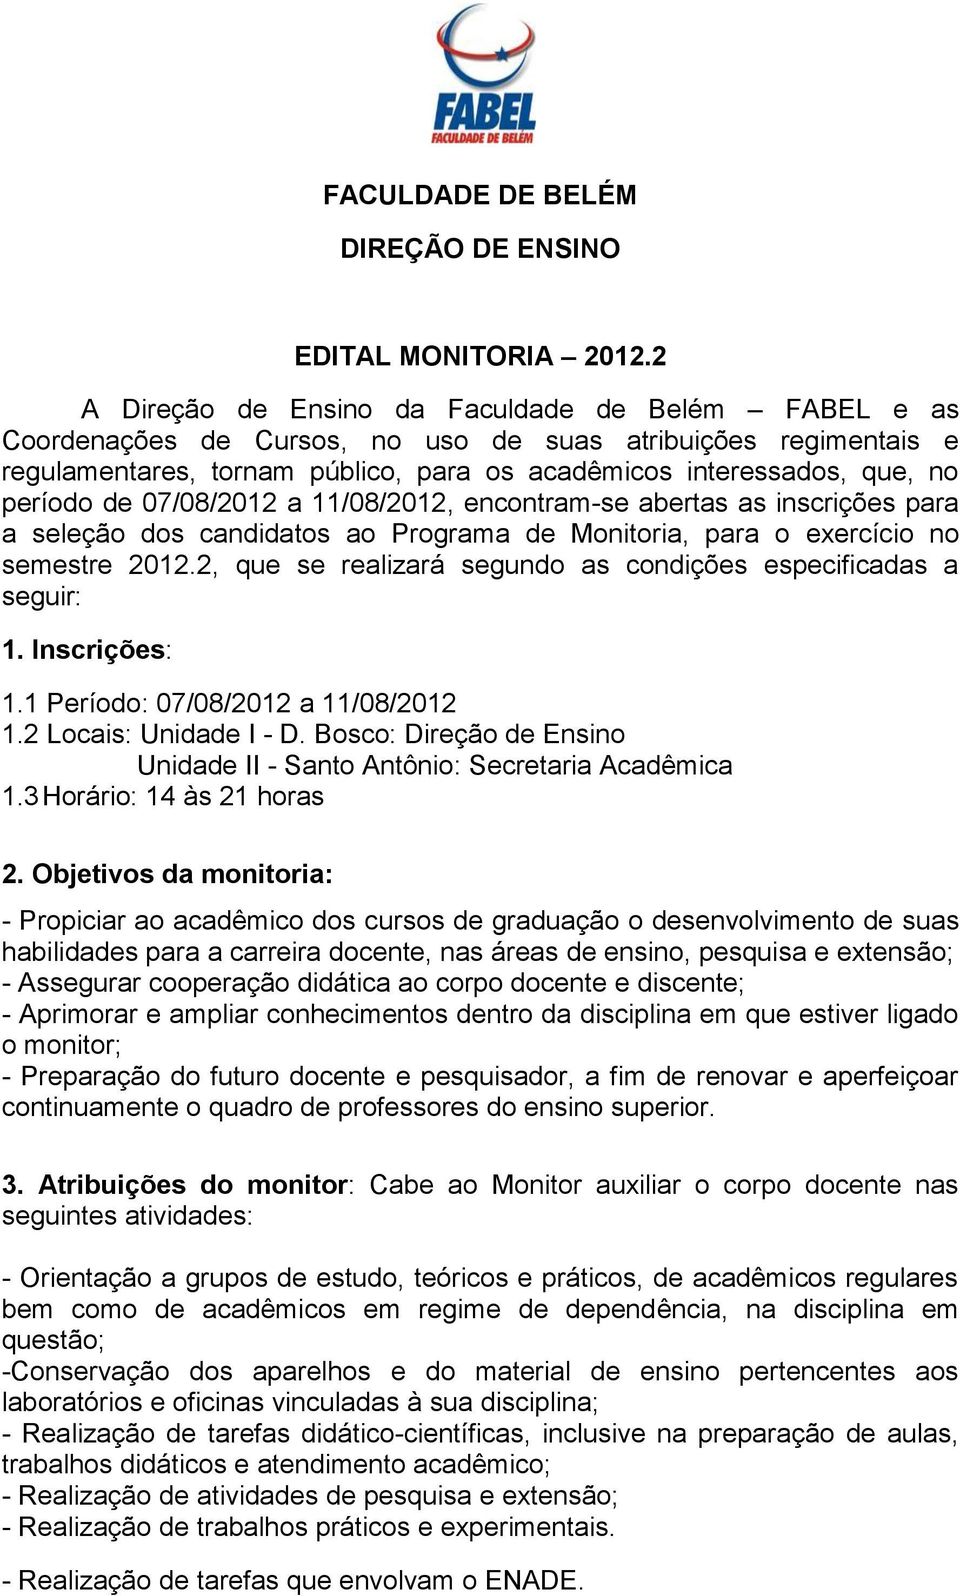 período de 07/08/2012 a 11/08/2012, encontram-se abertas as inscrições para a seleção dos candidatos ao Programa de Monitoria, para o exercício no semestre 2012.